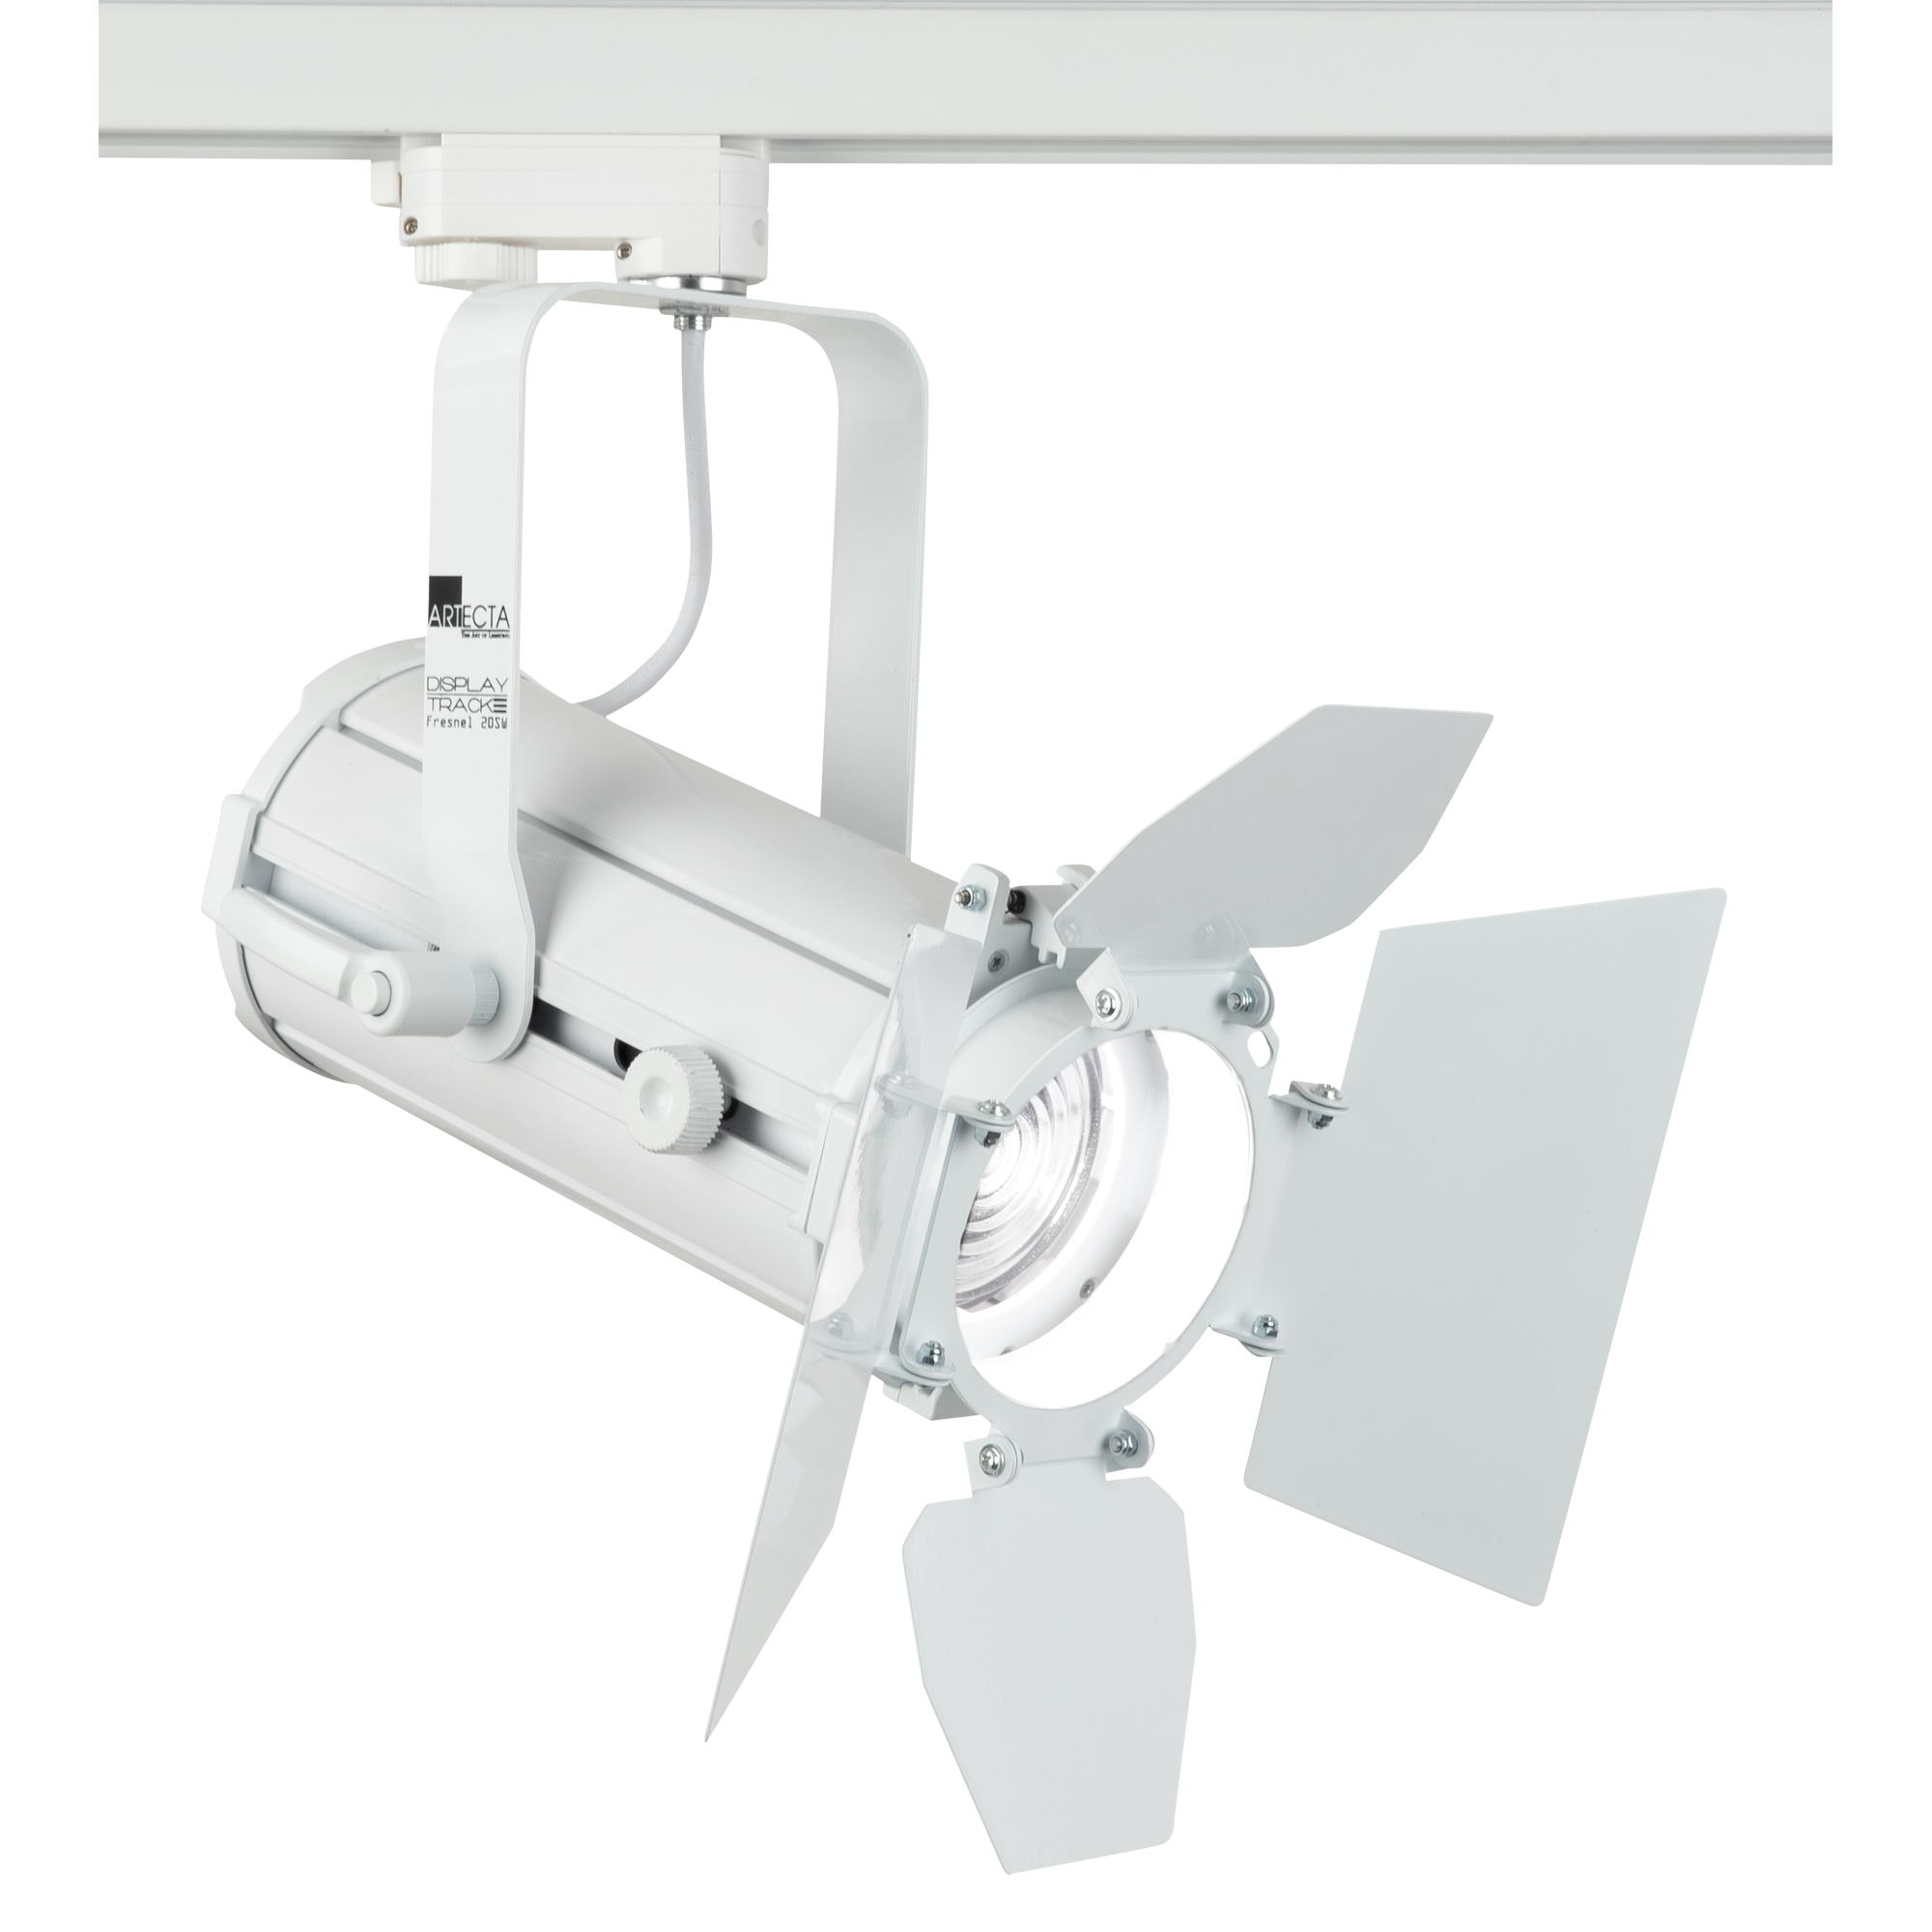 Artecta Display Track Fresnel 20 SW 20 W Schaltbare Weiße LED-Fresnel - Weiß